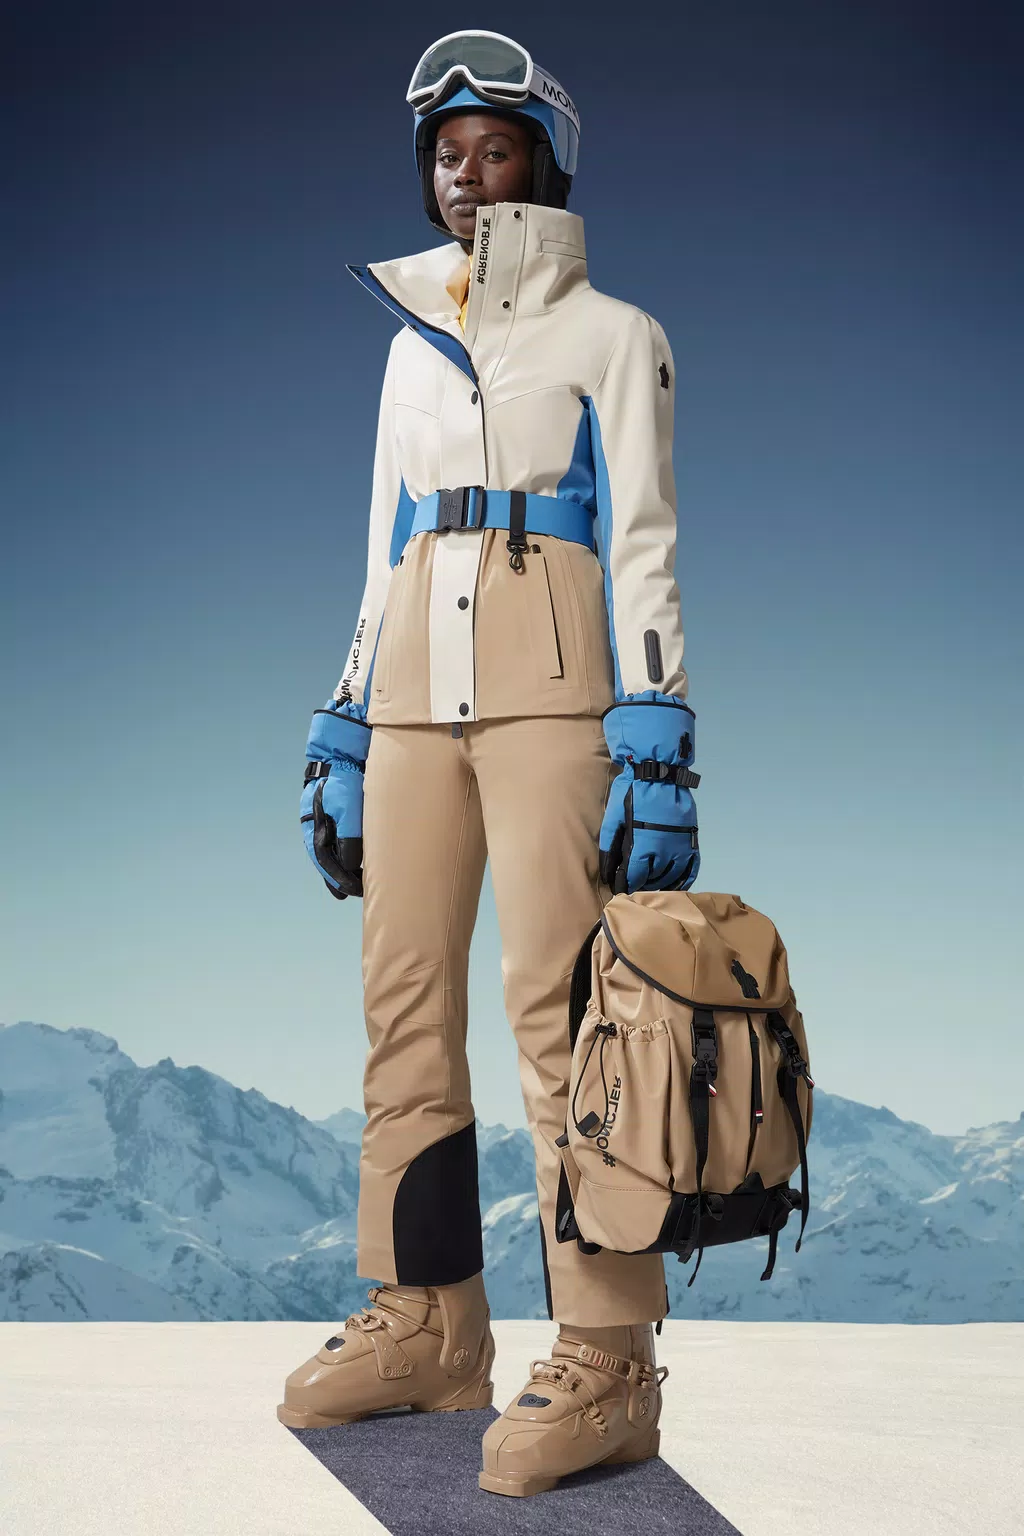 Women’s Ski Gear Outfit (Maroon/Black)